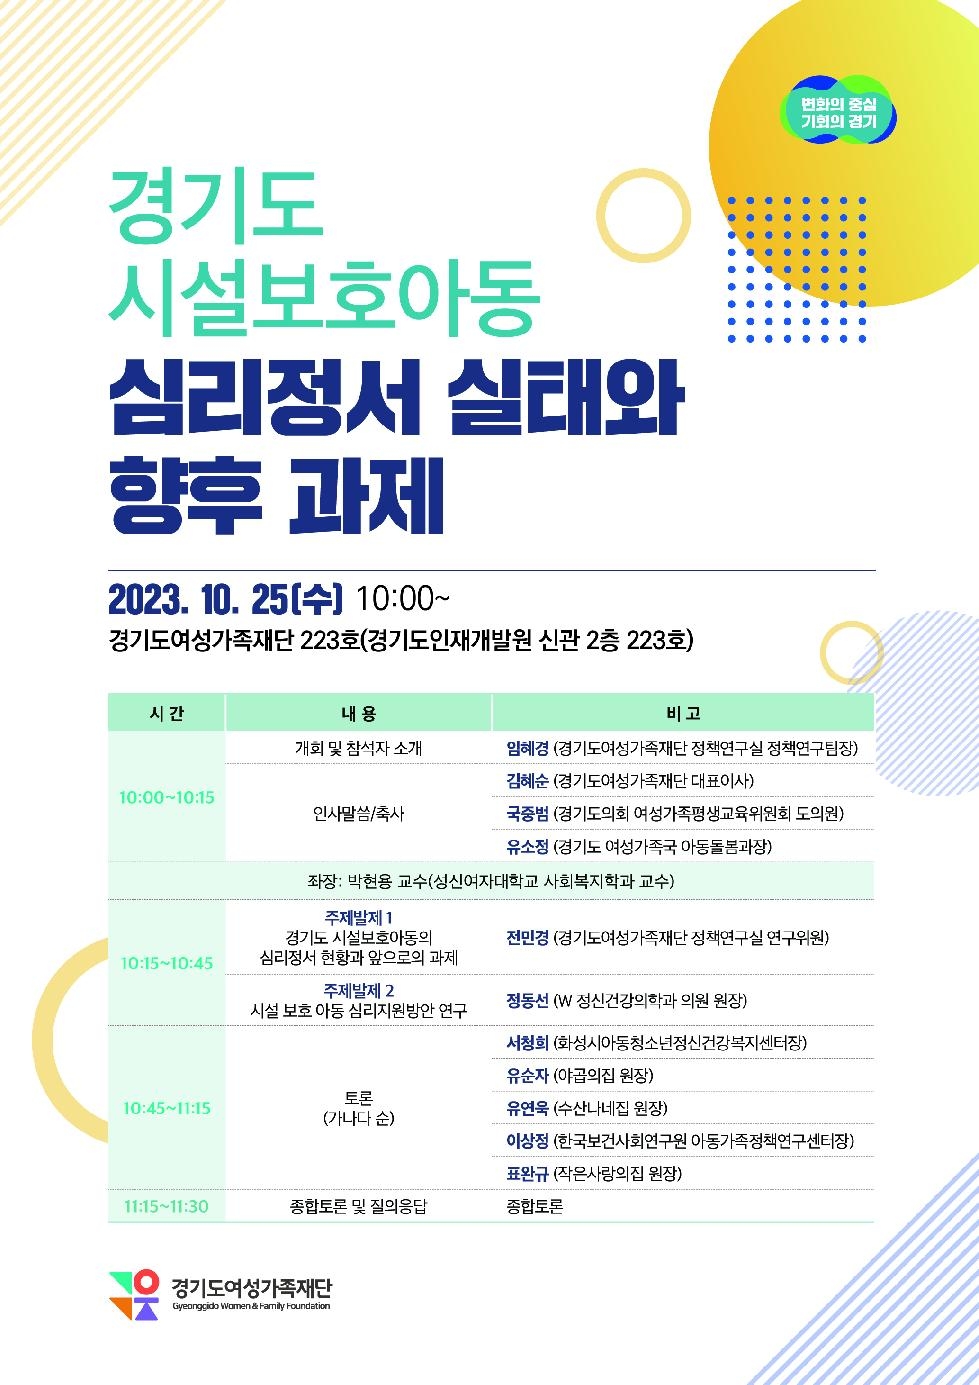 경기도, 도 여성가족재단  25일 시설보호아동 정책포럼 개최